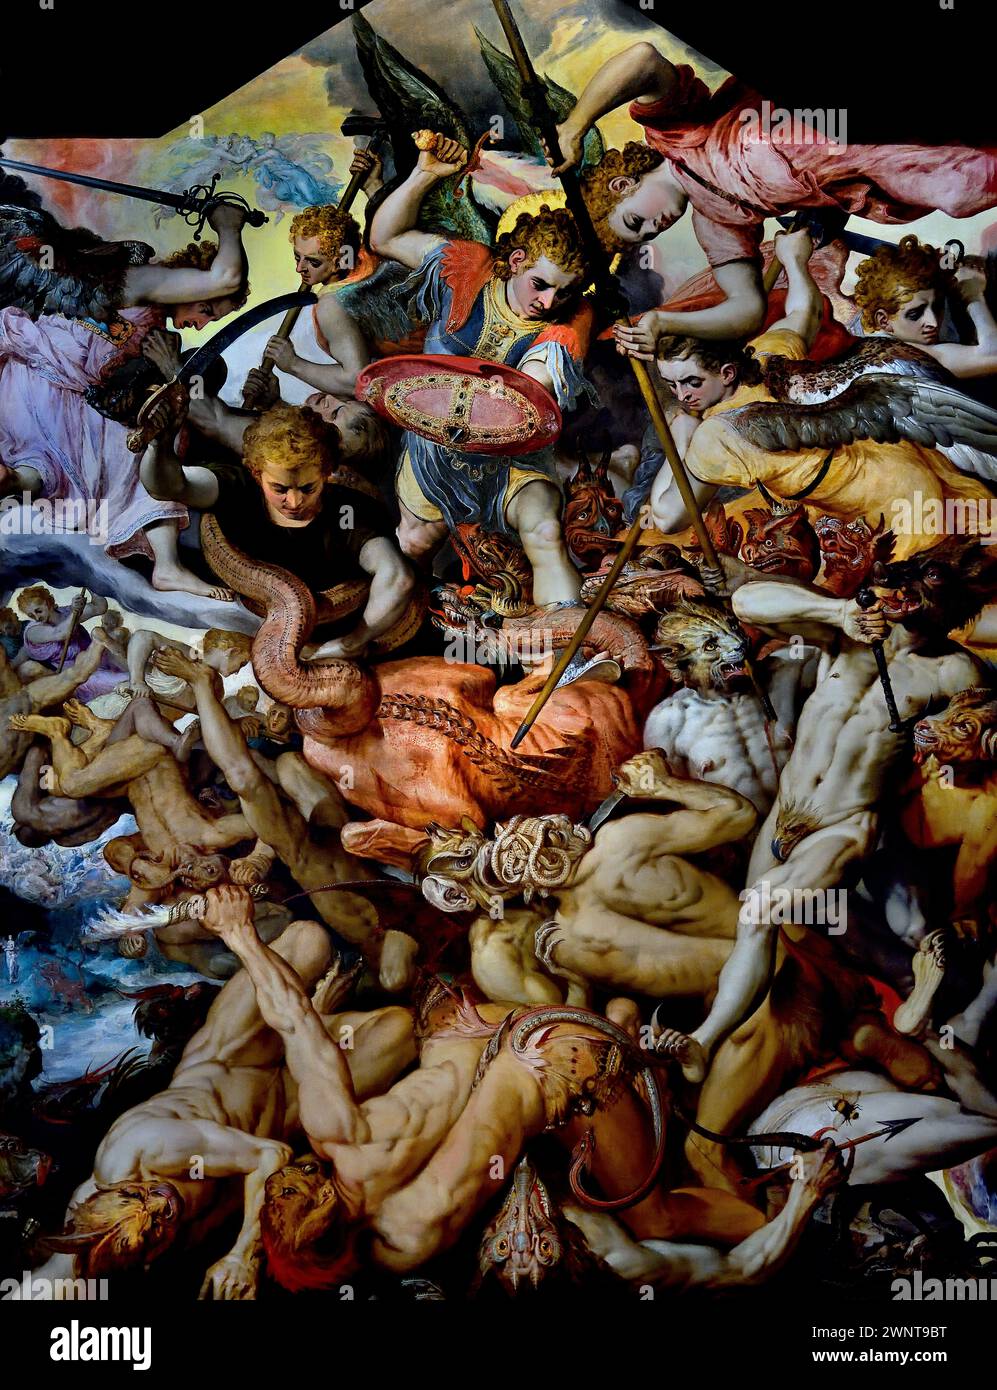 Der Fall der Rebel Angels 1554 Frans Floris I 1515-1570 Königliches Museum der Schönen Künste, Antwerpen, Belgien, Belgien. (Biblischer Kampf zwischen gut und Böse. Es ist ein dichtes Gewirr aus Armen, Beinen, Flügeln und Schwänzen. An der Spitze kämpfen die Gott treuen Engel mit dem Erzengel Michael als ihrem Hauptmann. Stockfoto